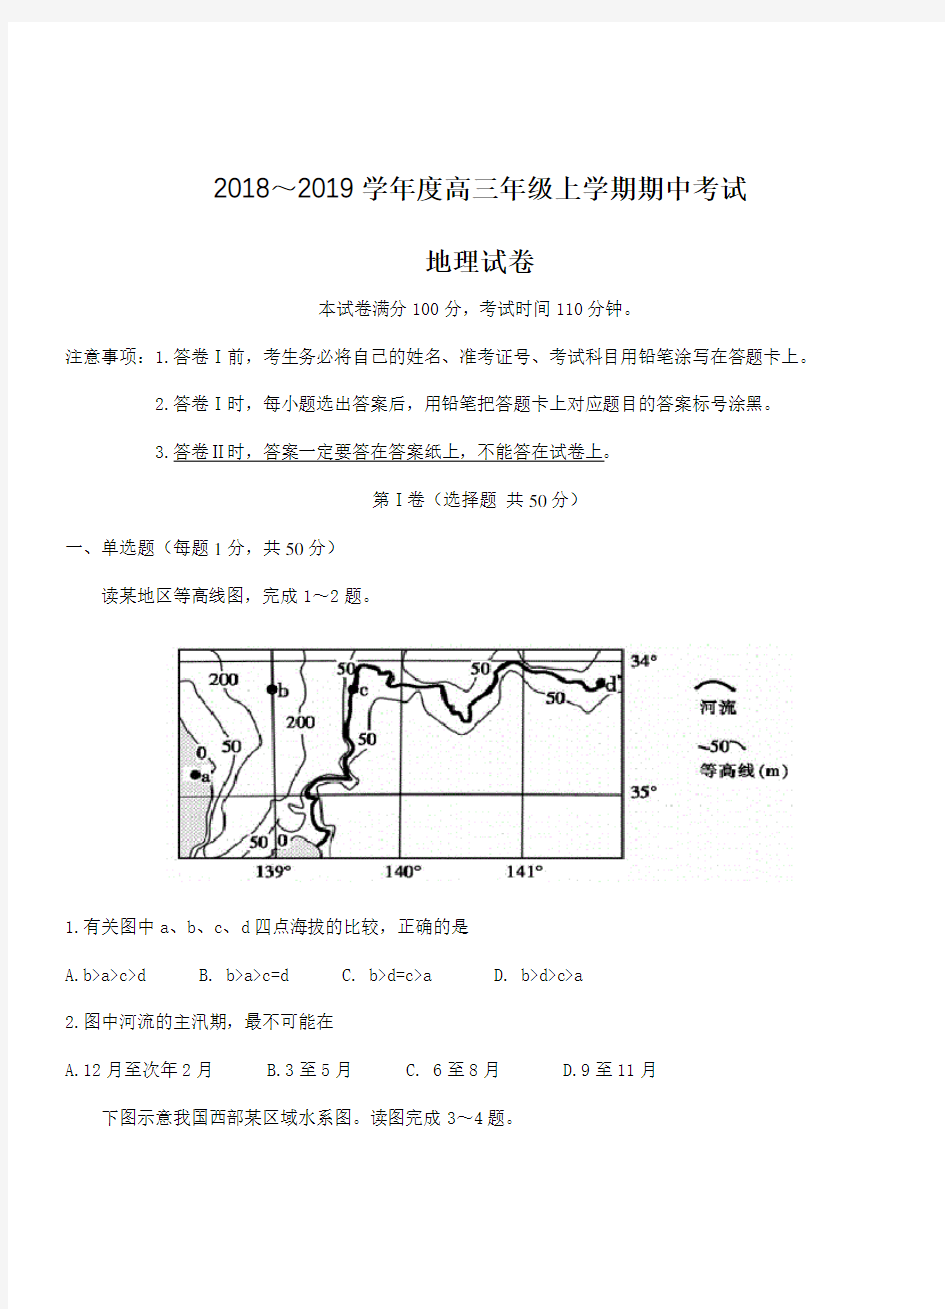 河北省衡水中学2019届高三期中考试地理试卷(带答案)